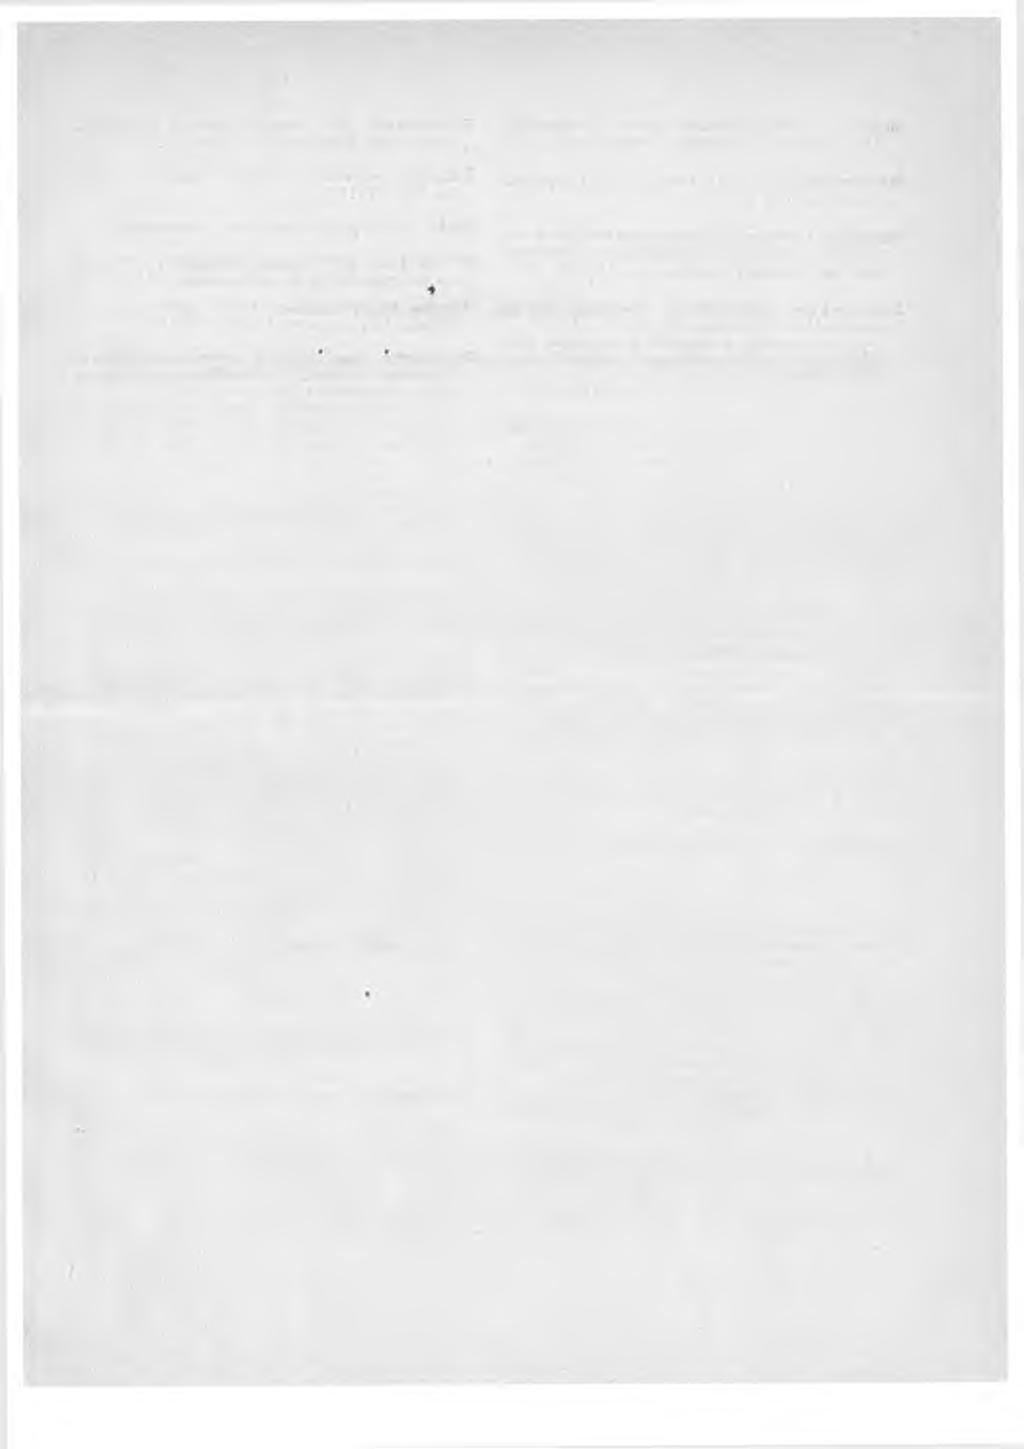 ÄMaluettelo Suomen Postihallituksen kiertokirjeiden liitteistä vuodelta 1905. Aikataulut: uusiin aikatauluehdotuksiin on liitettävä viimeksi voimassa oleva taulu, liit. 7 s. 57 (12).